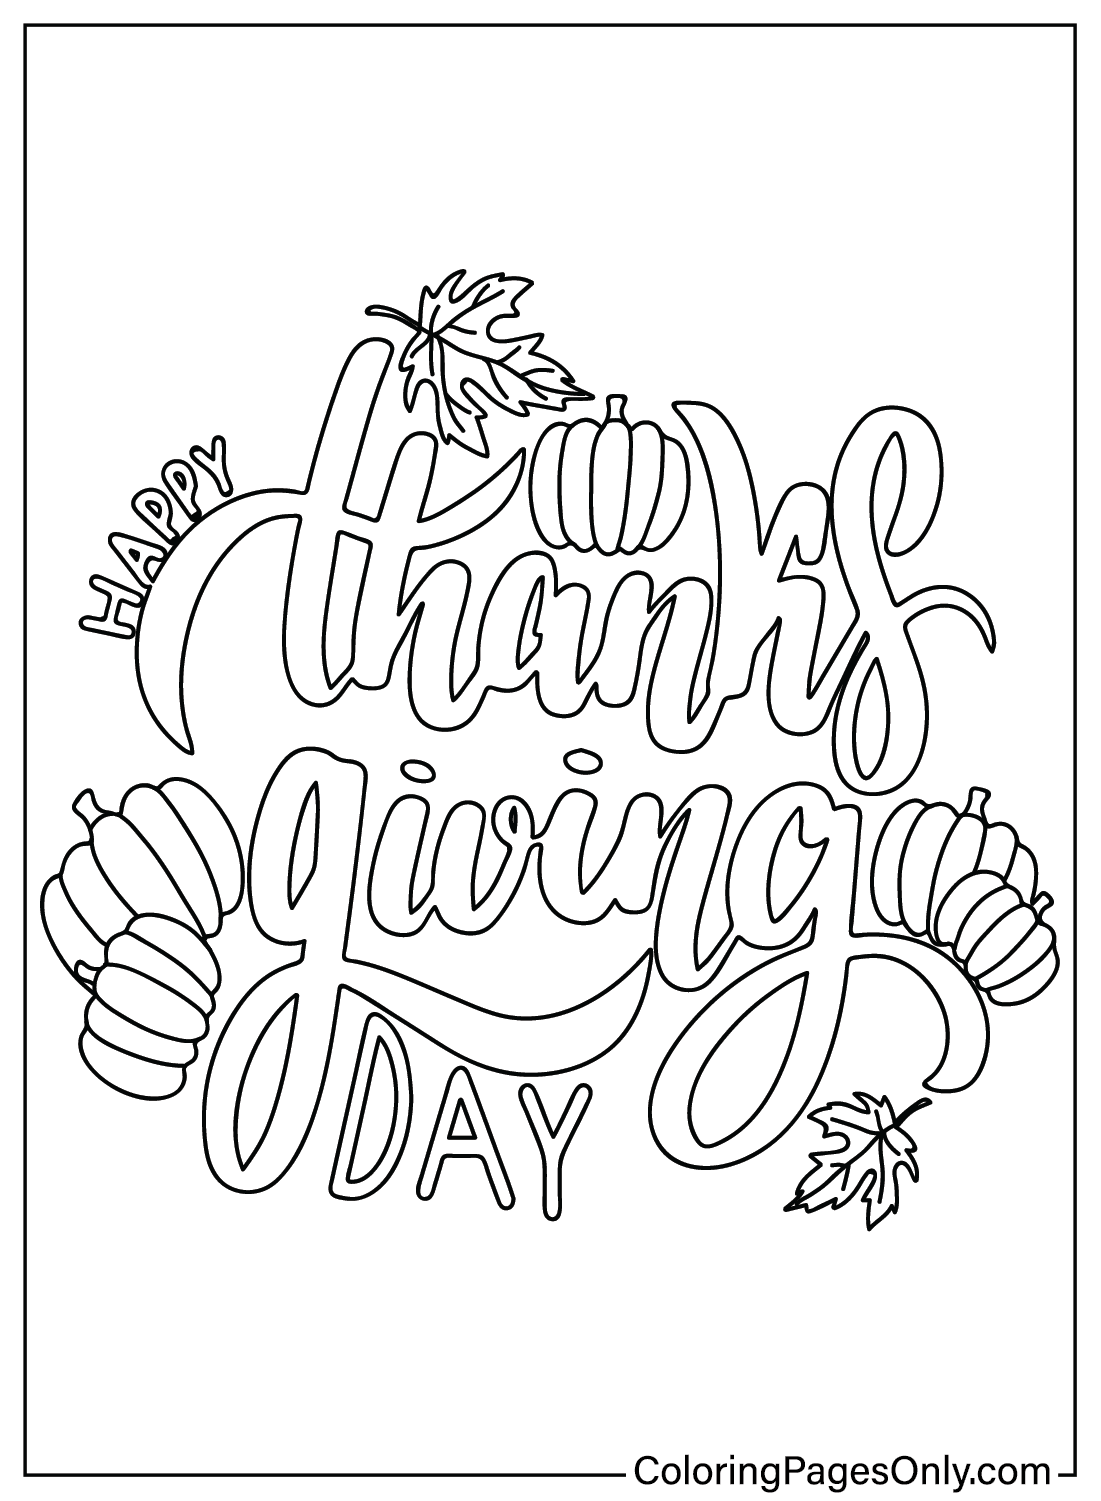 Página para colorear de Acción de Gracias gratis de Acción de Gracias